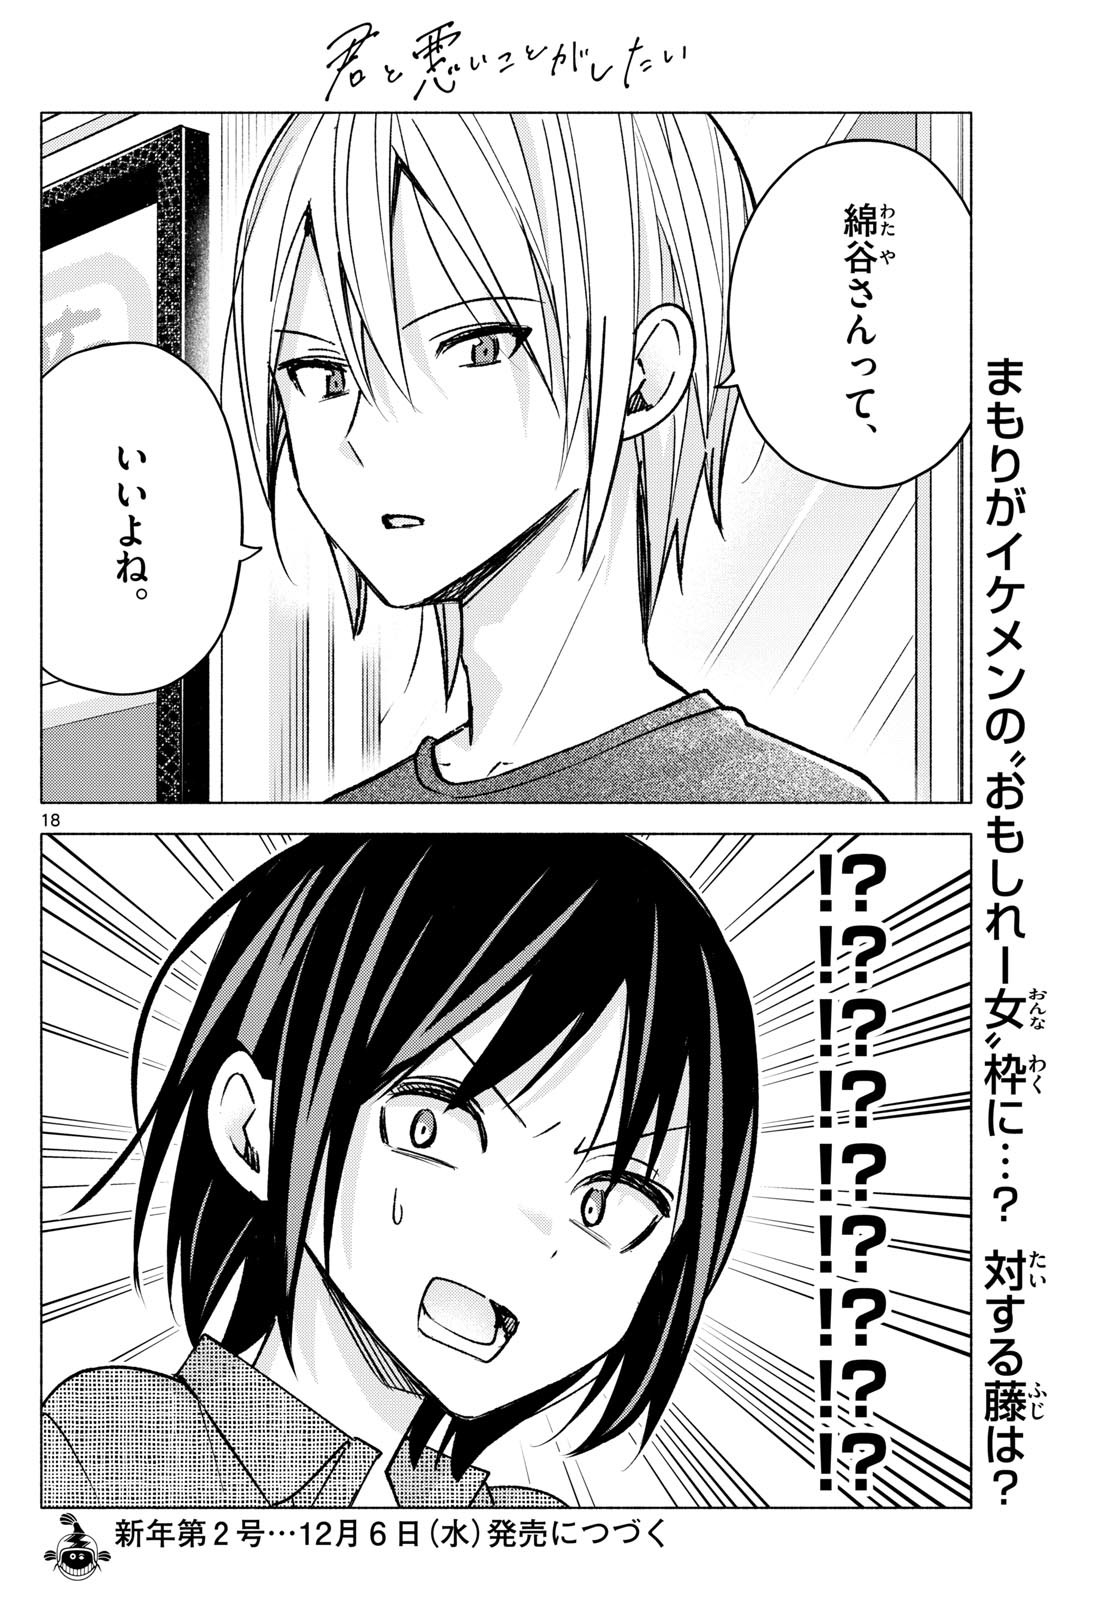 Kimi to Warui Koto ga Shitai - Chapter 053 - Page 18